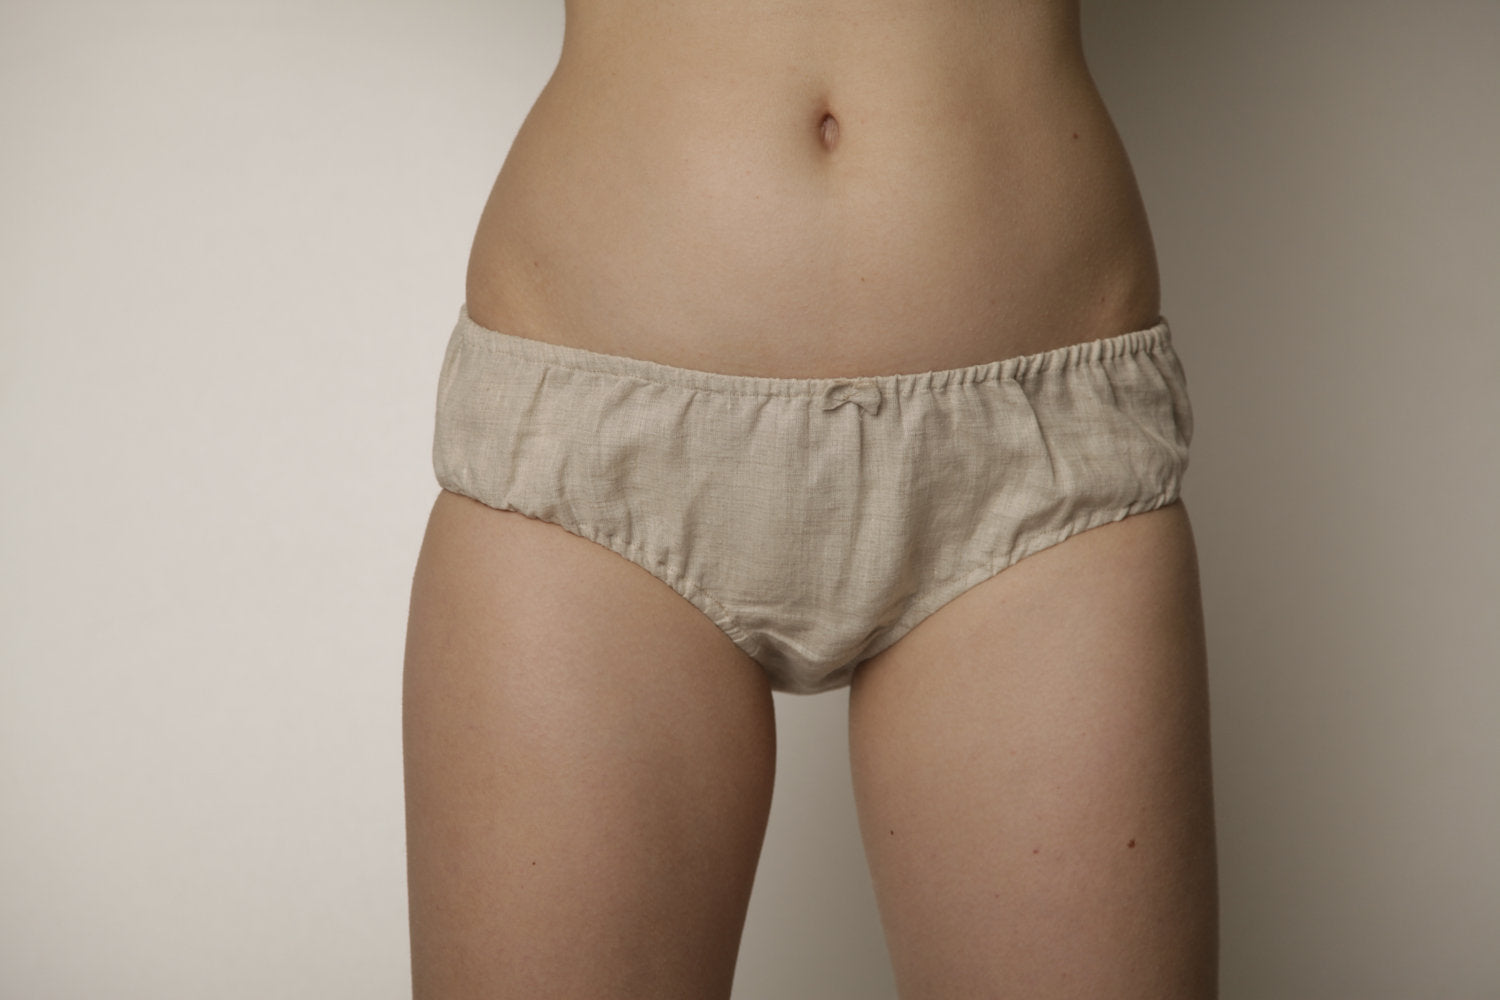 Women Panties Women Underwear Panties for Women Women Knickers